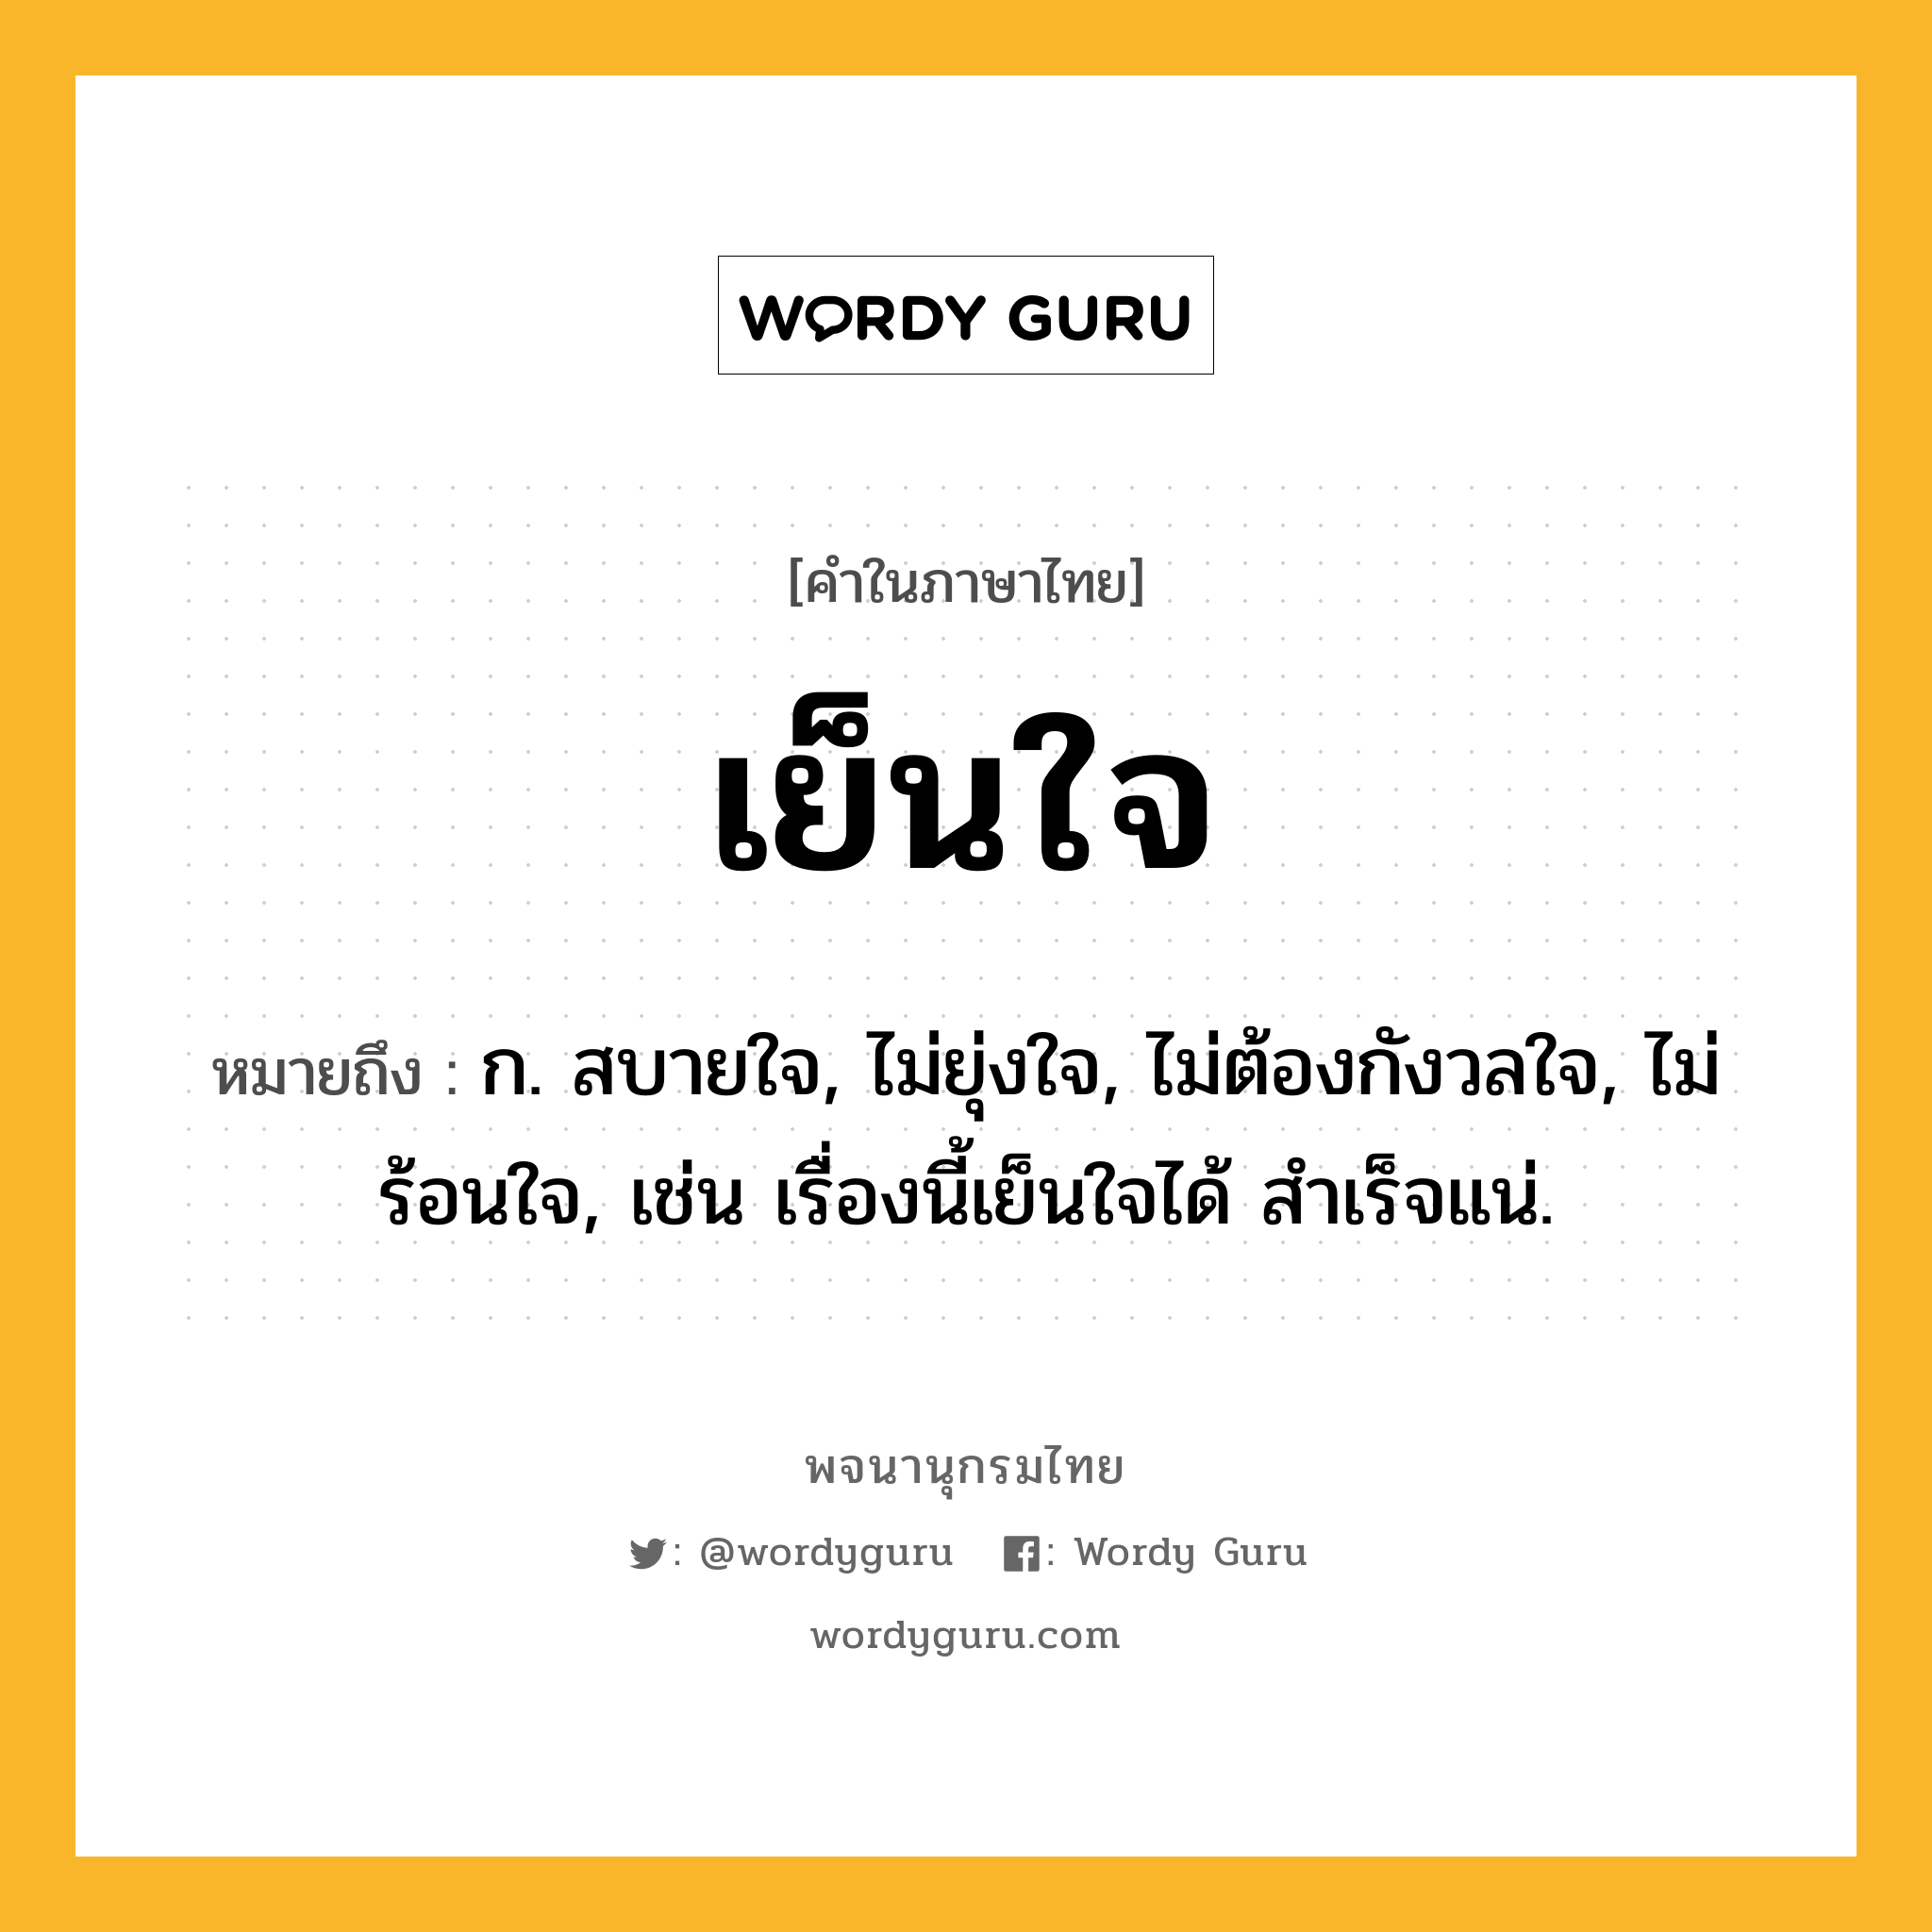 เย็นใจ ความหมาย หมายถึงอะไร?, คำในภาษาไทย เย็นใจ หมายถึง ก. สบายใจ, ไม่ยุ่งใจ, ไม่ต้องกังวลใจ, ไม่ร้อนใจ, เช่น เรื่องนี้เย็นใจได้ สำเร็จแน่.